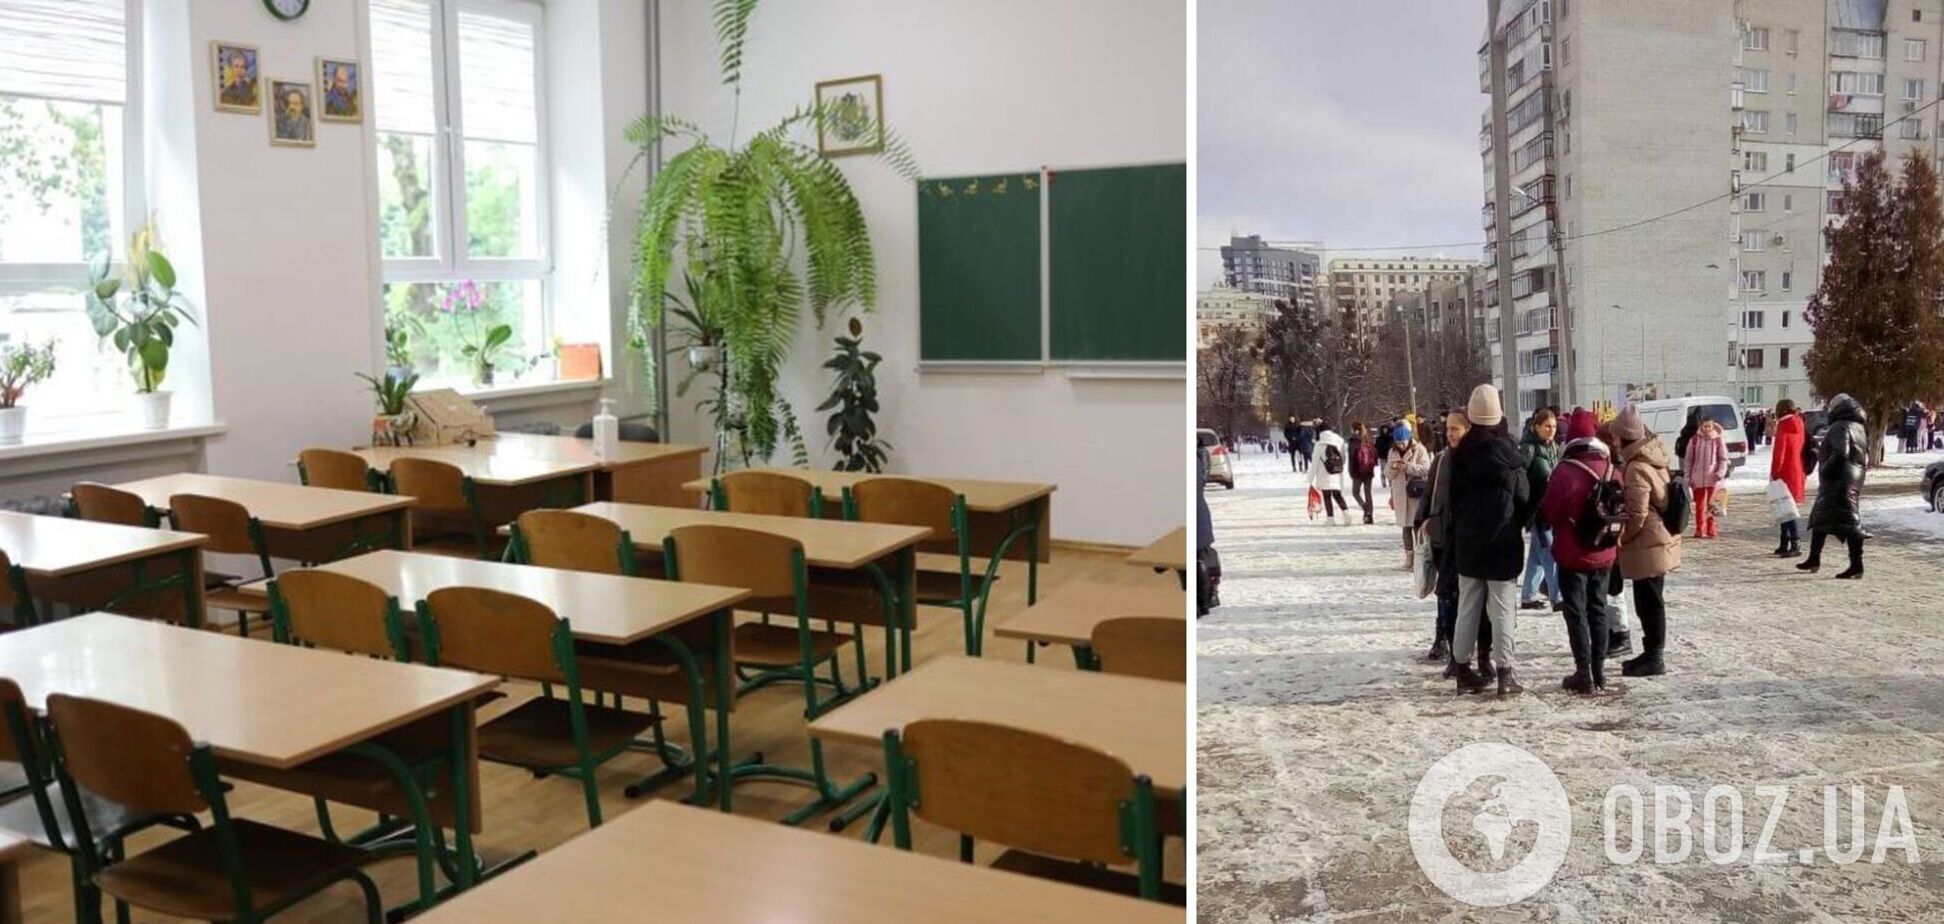 Анонім заявив, що всі школи Львова заміновані